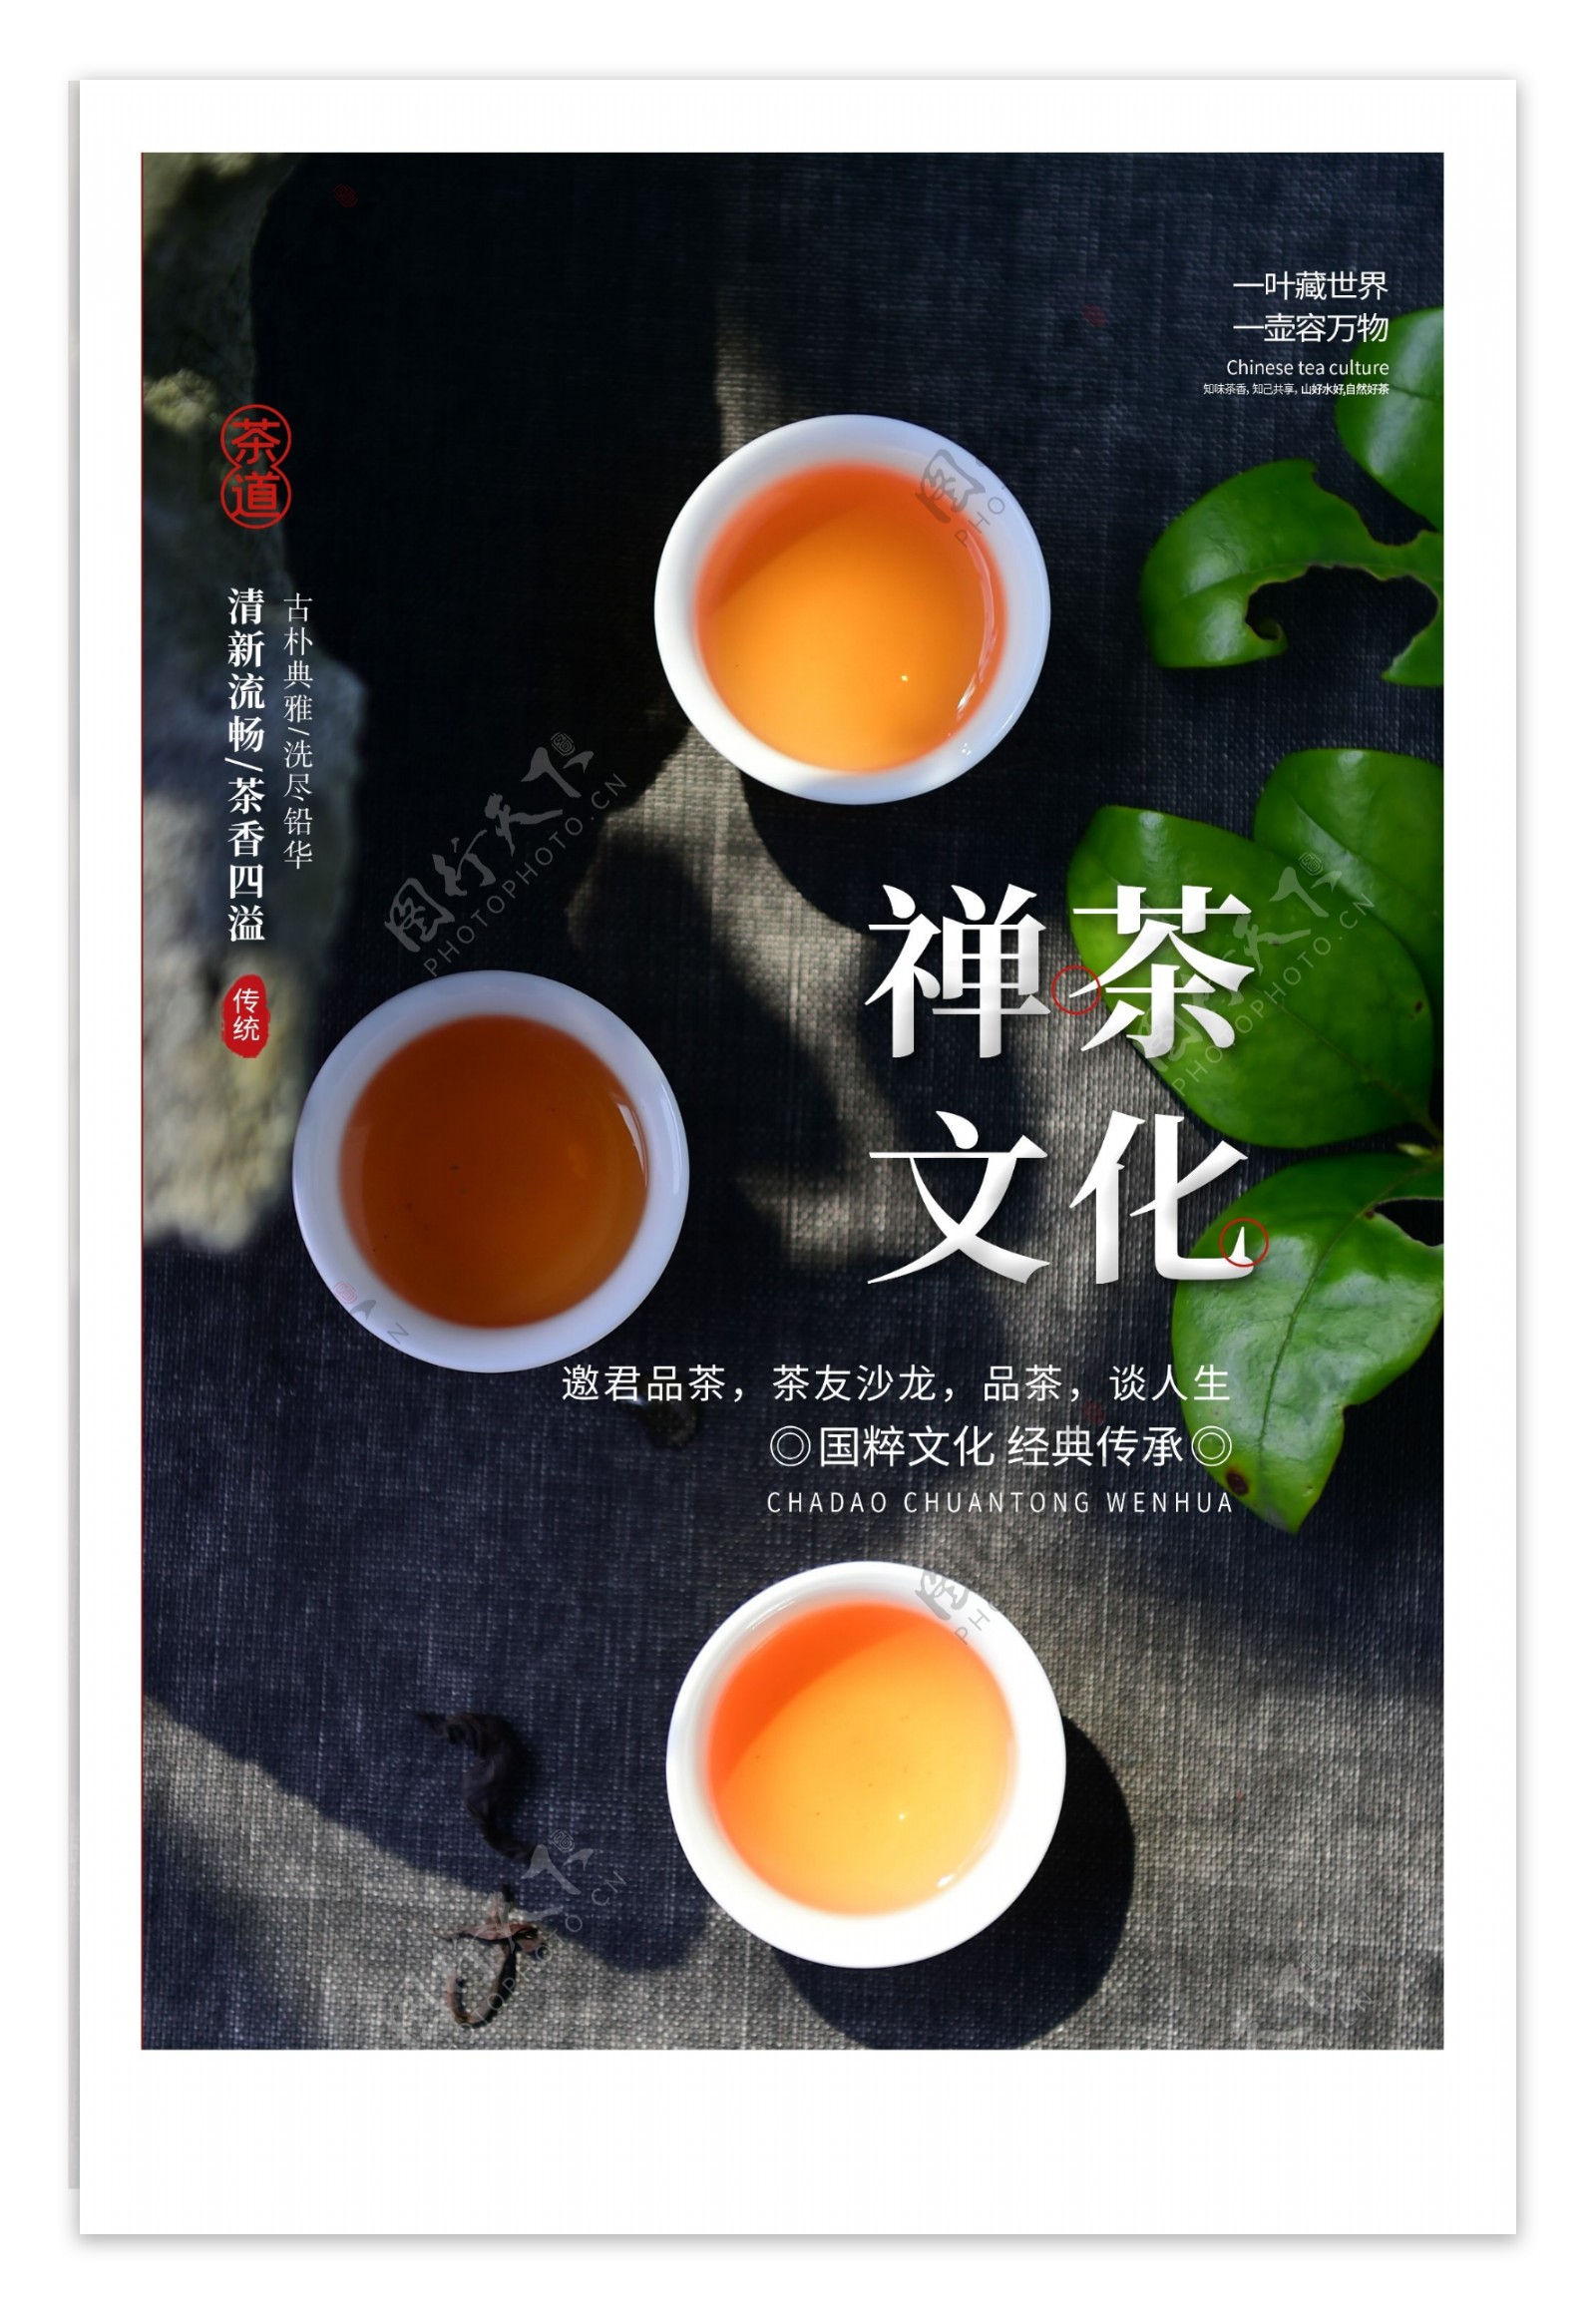 禅茶文化活动宣传海报素材